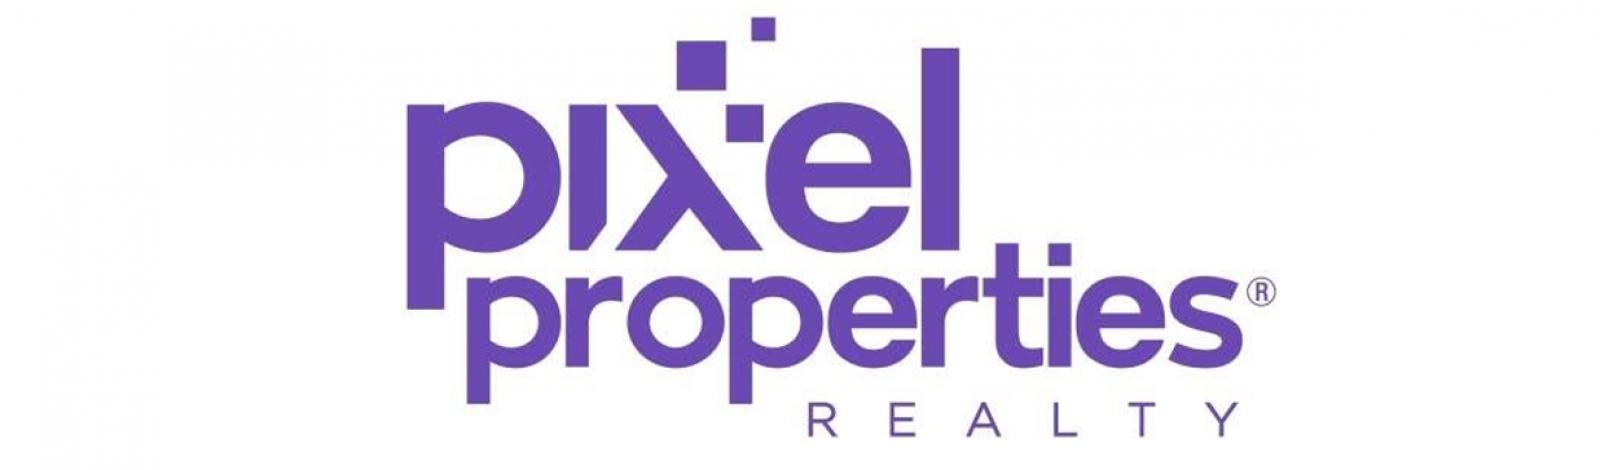 Pixel properties banner